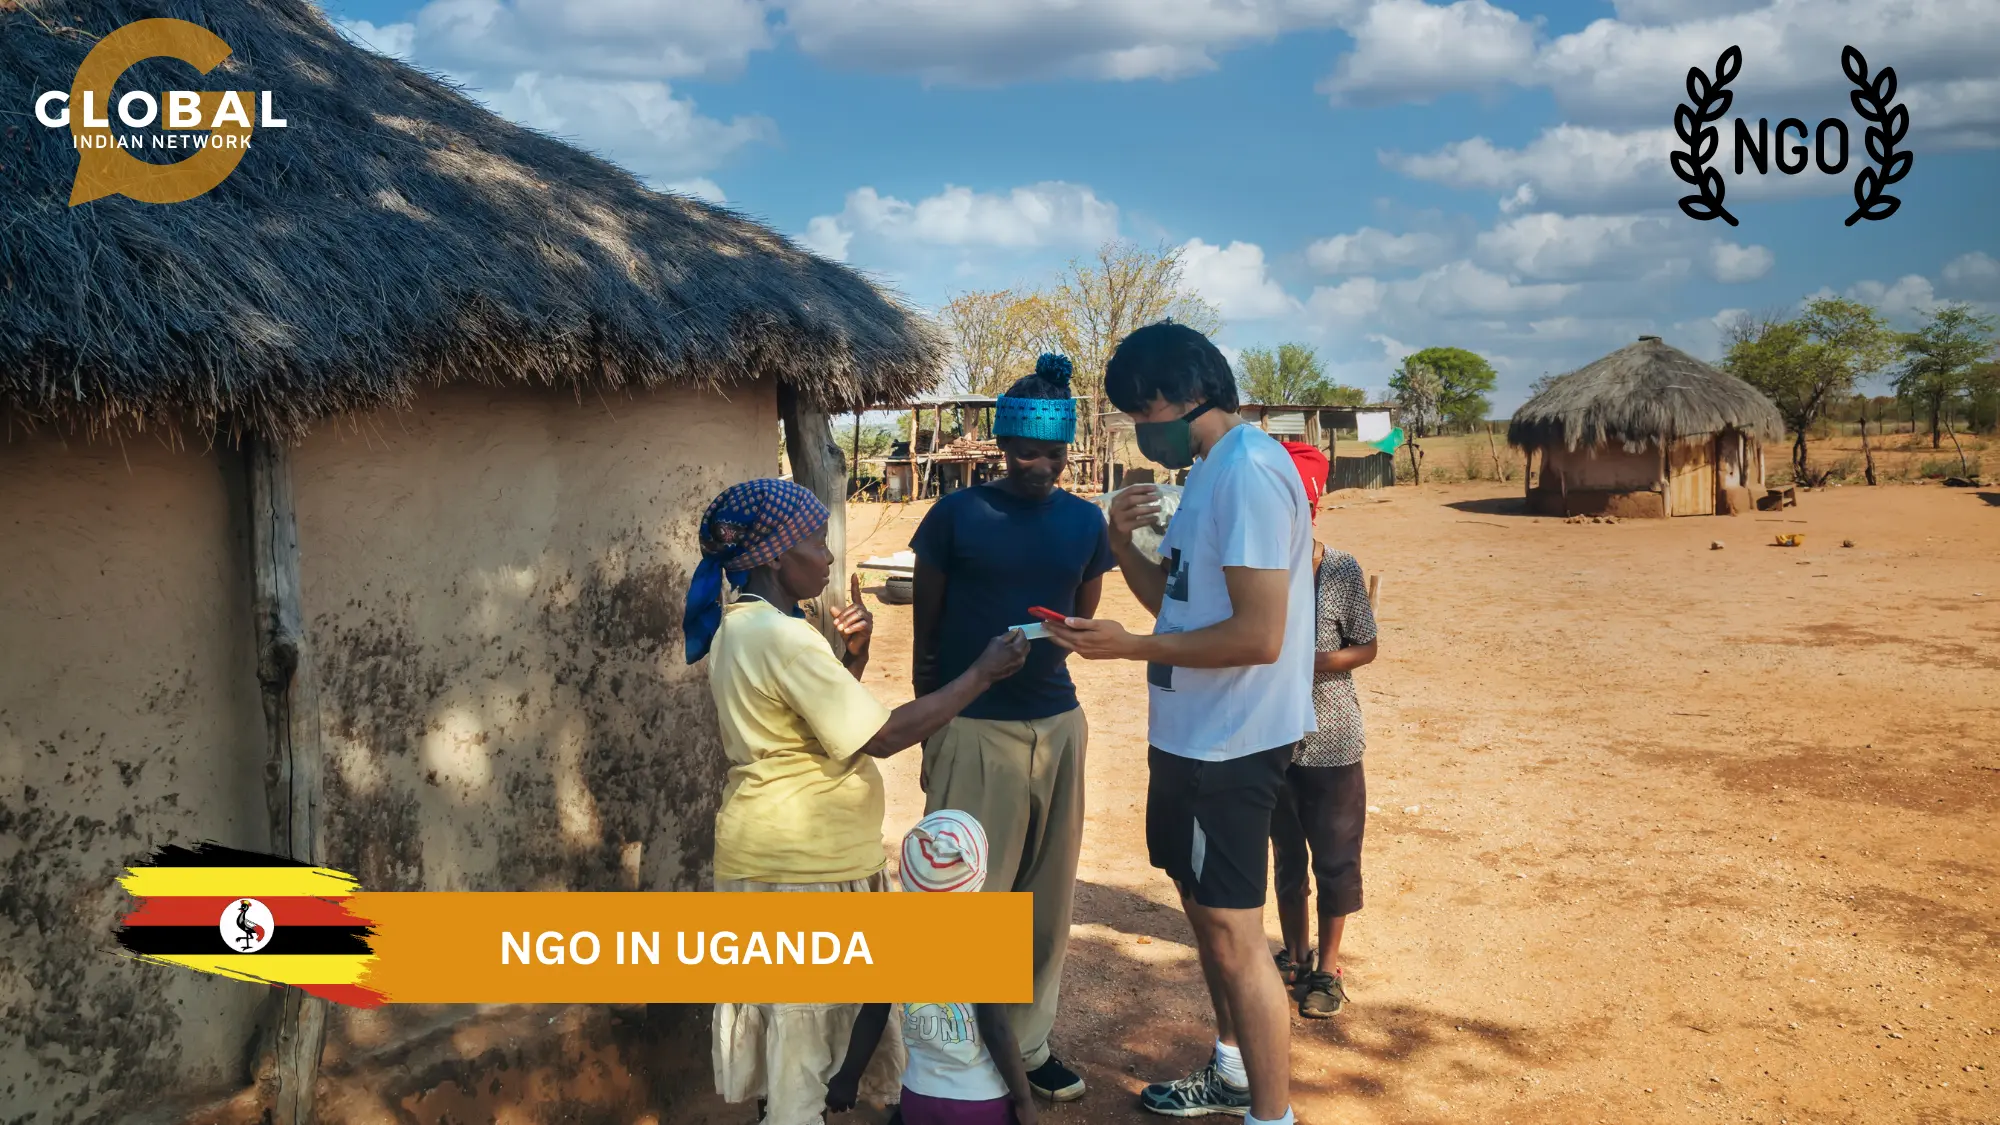 ngos in uganda